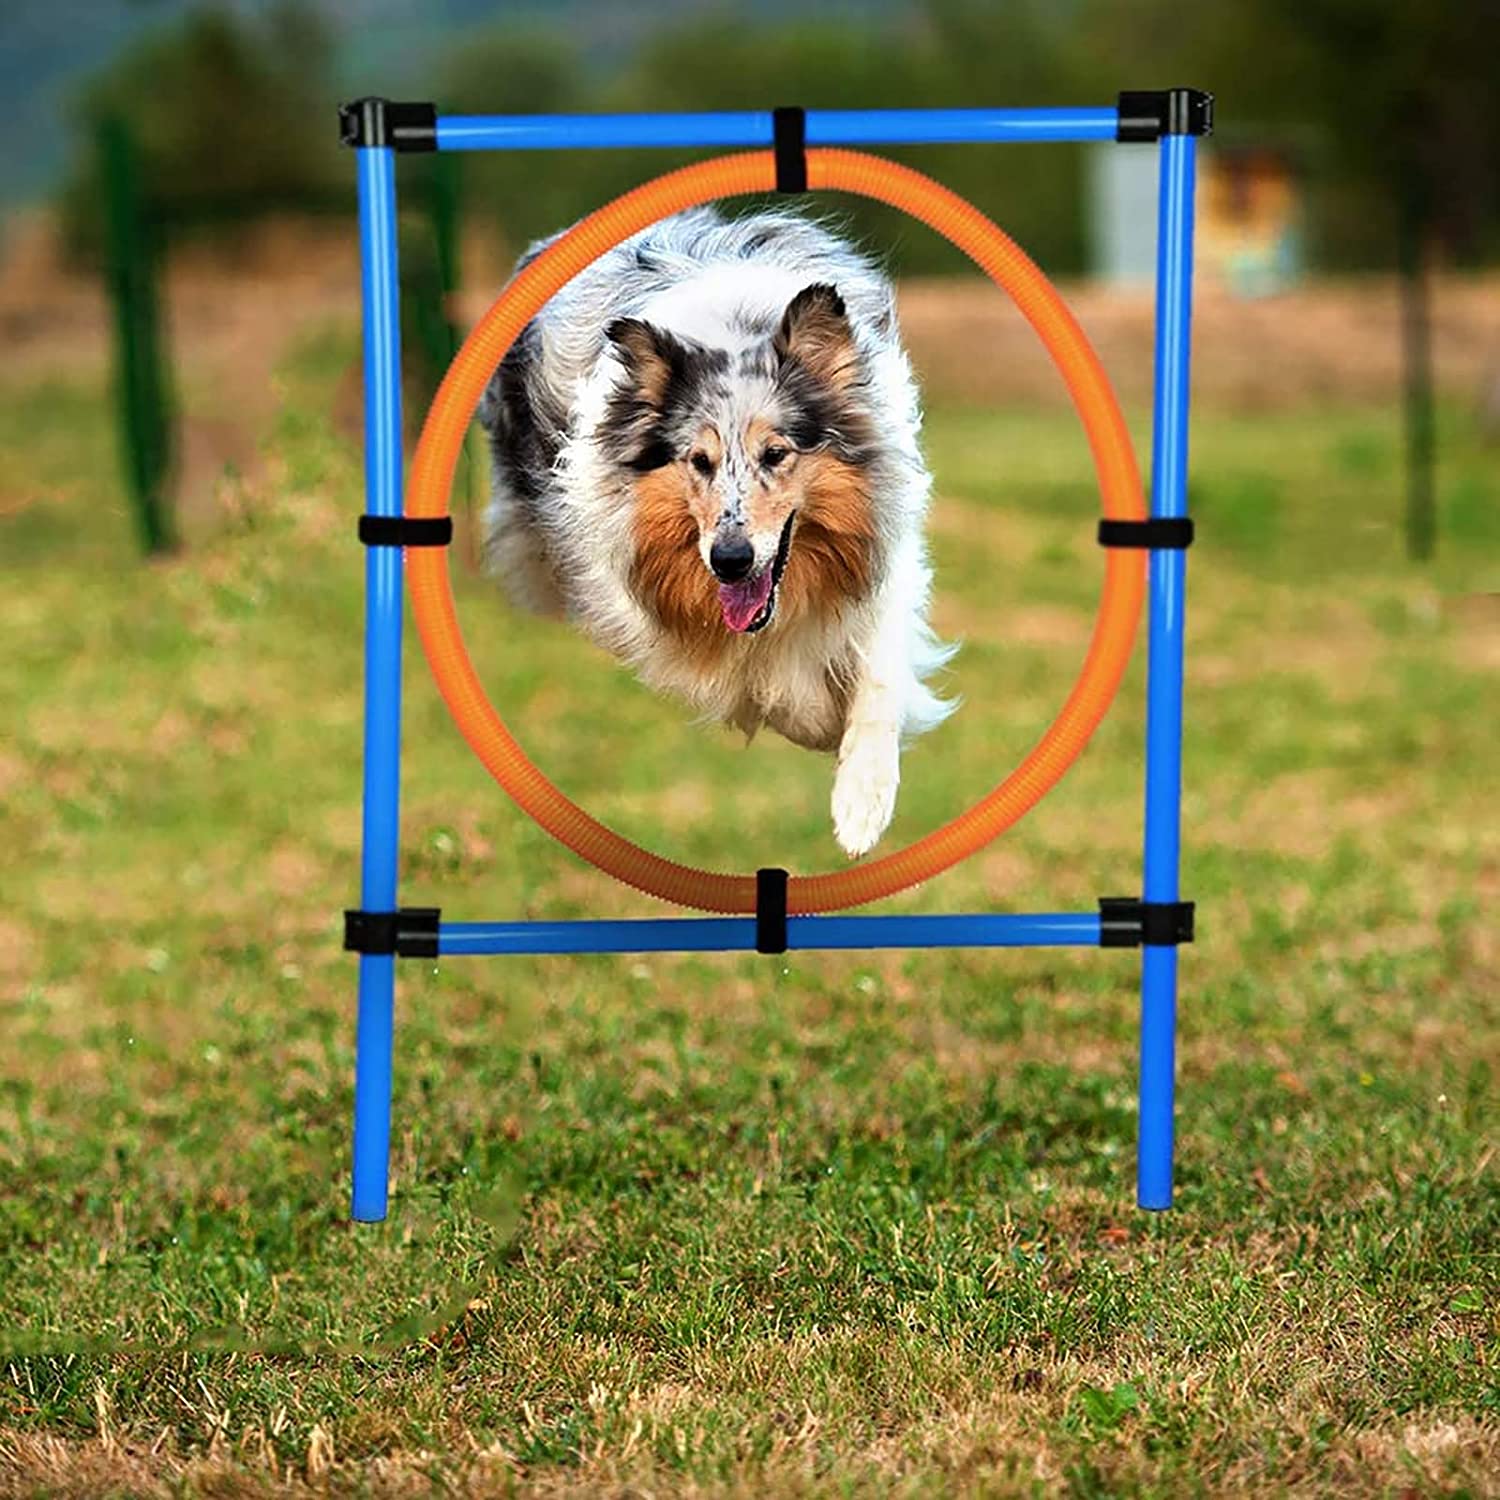 収納バッグ付きアジリティ機器犬、トレーニング犬スポーツハードルスラロームポールアジリティジャンプリング犬トレーニングハードルジャンプリング